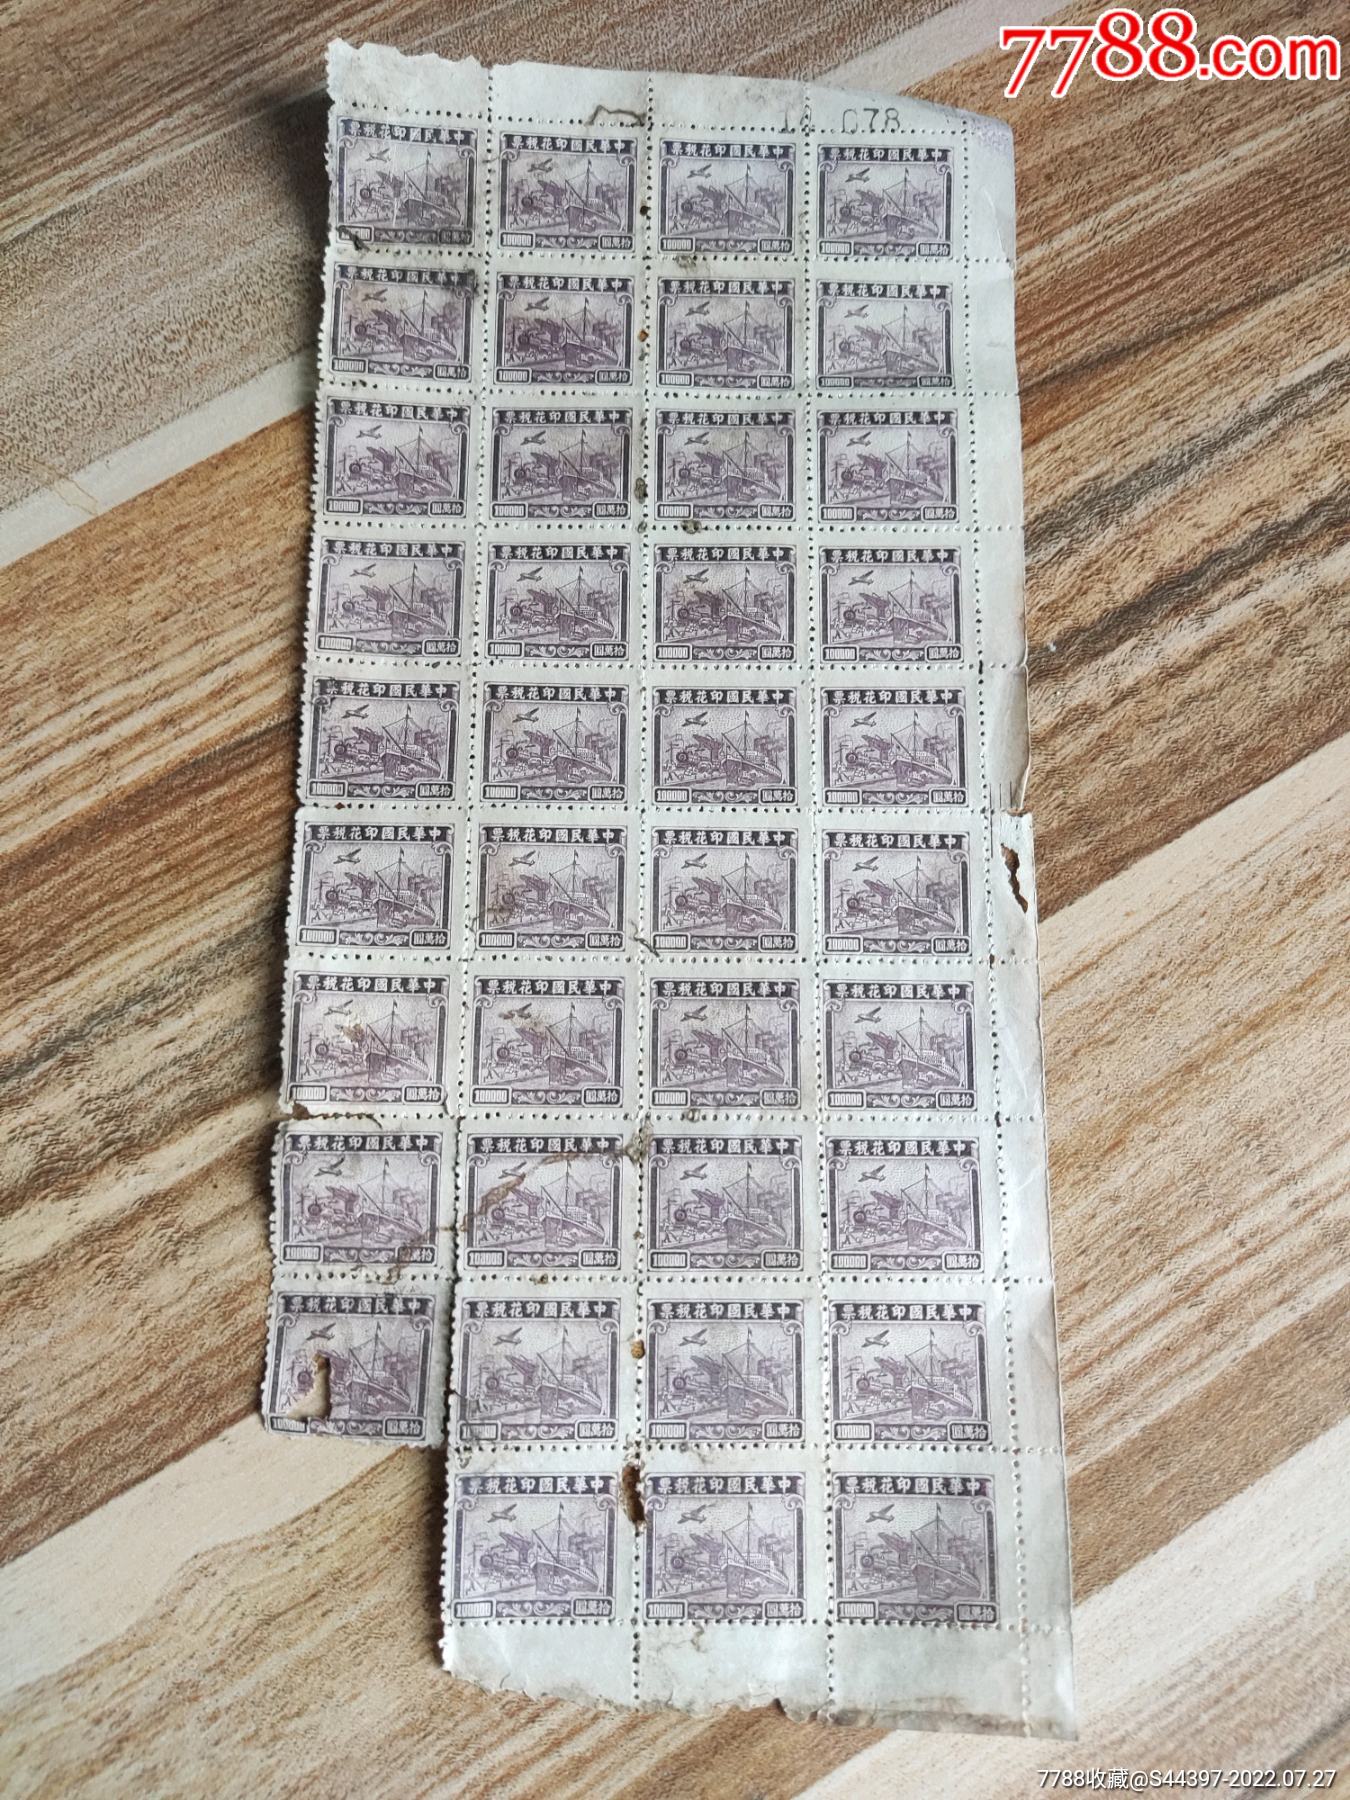 《拜年》 特种邮票 - 中国邮政集团有限公司